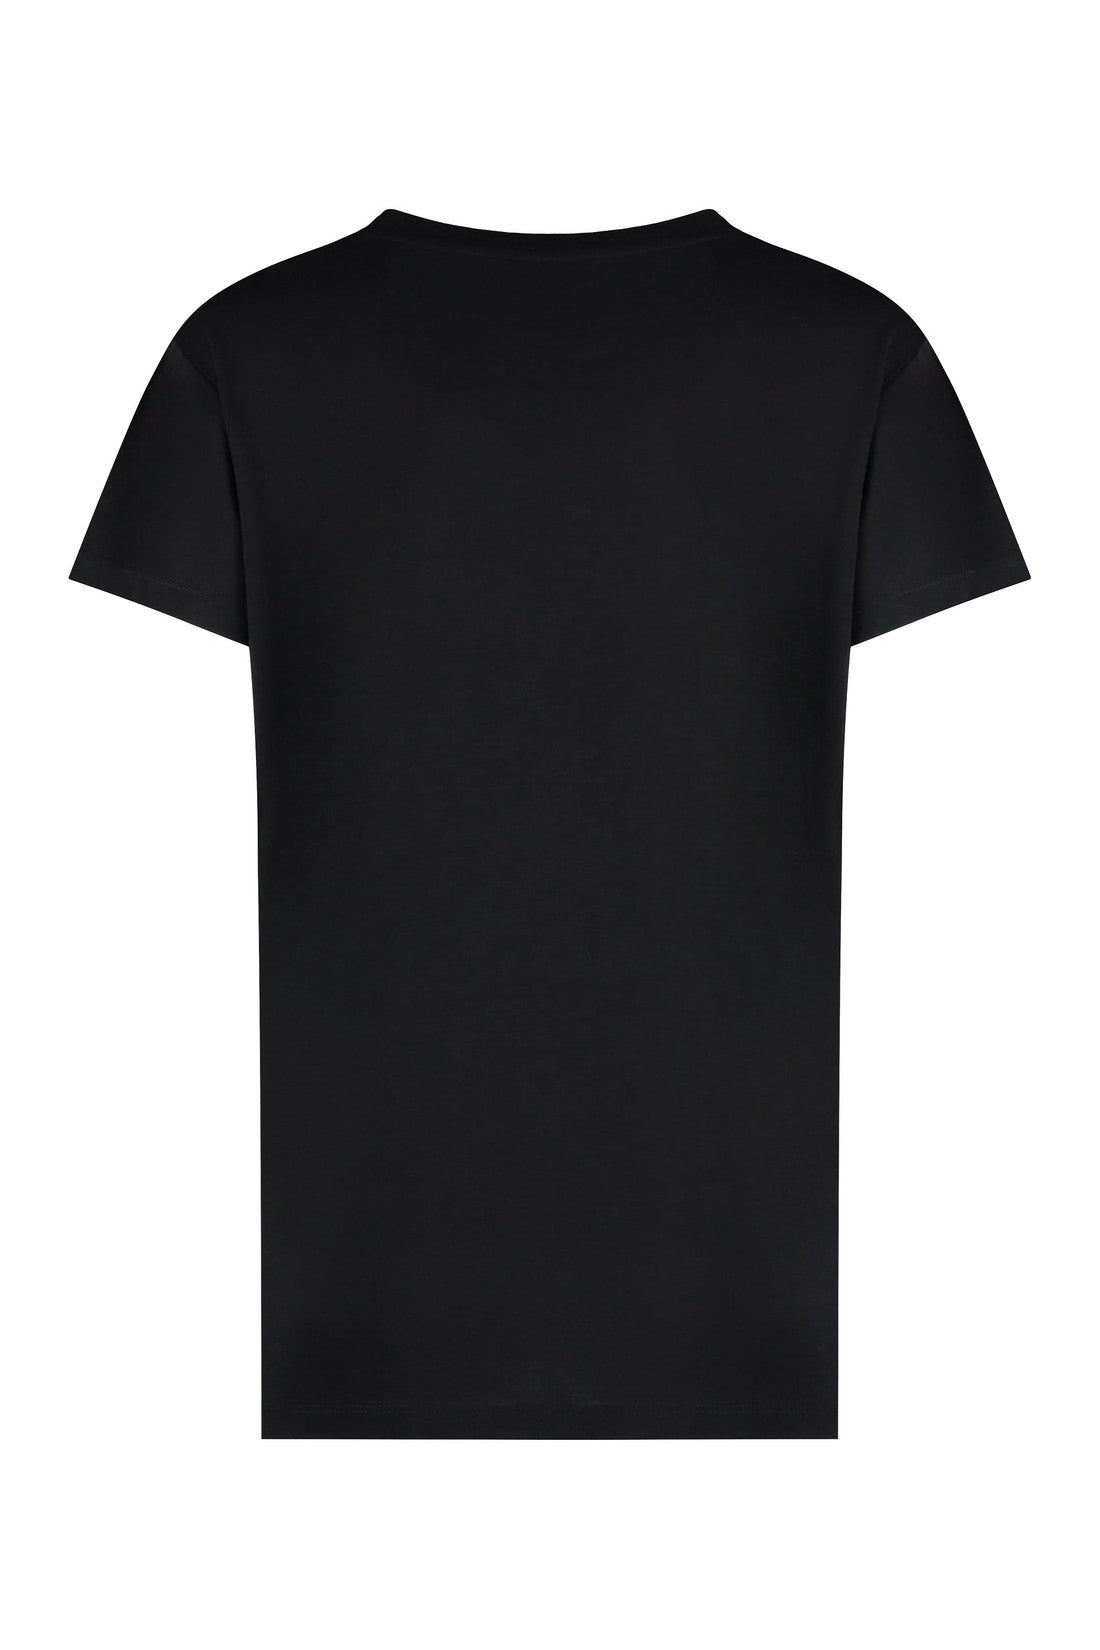 ZADIG&VOLTAIRE-OUTLET-SALE-Cotton blend crew-neck T-shirt-ARCHIVIST